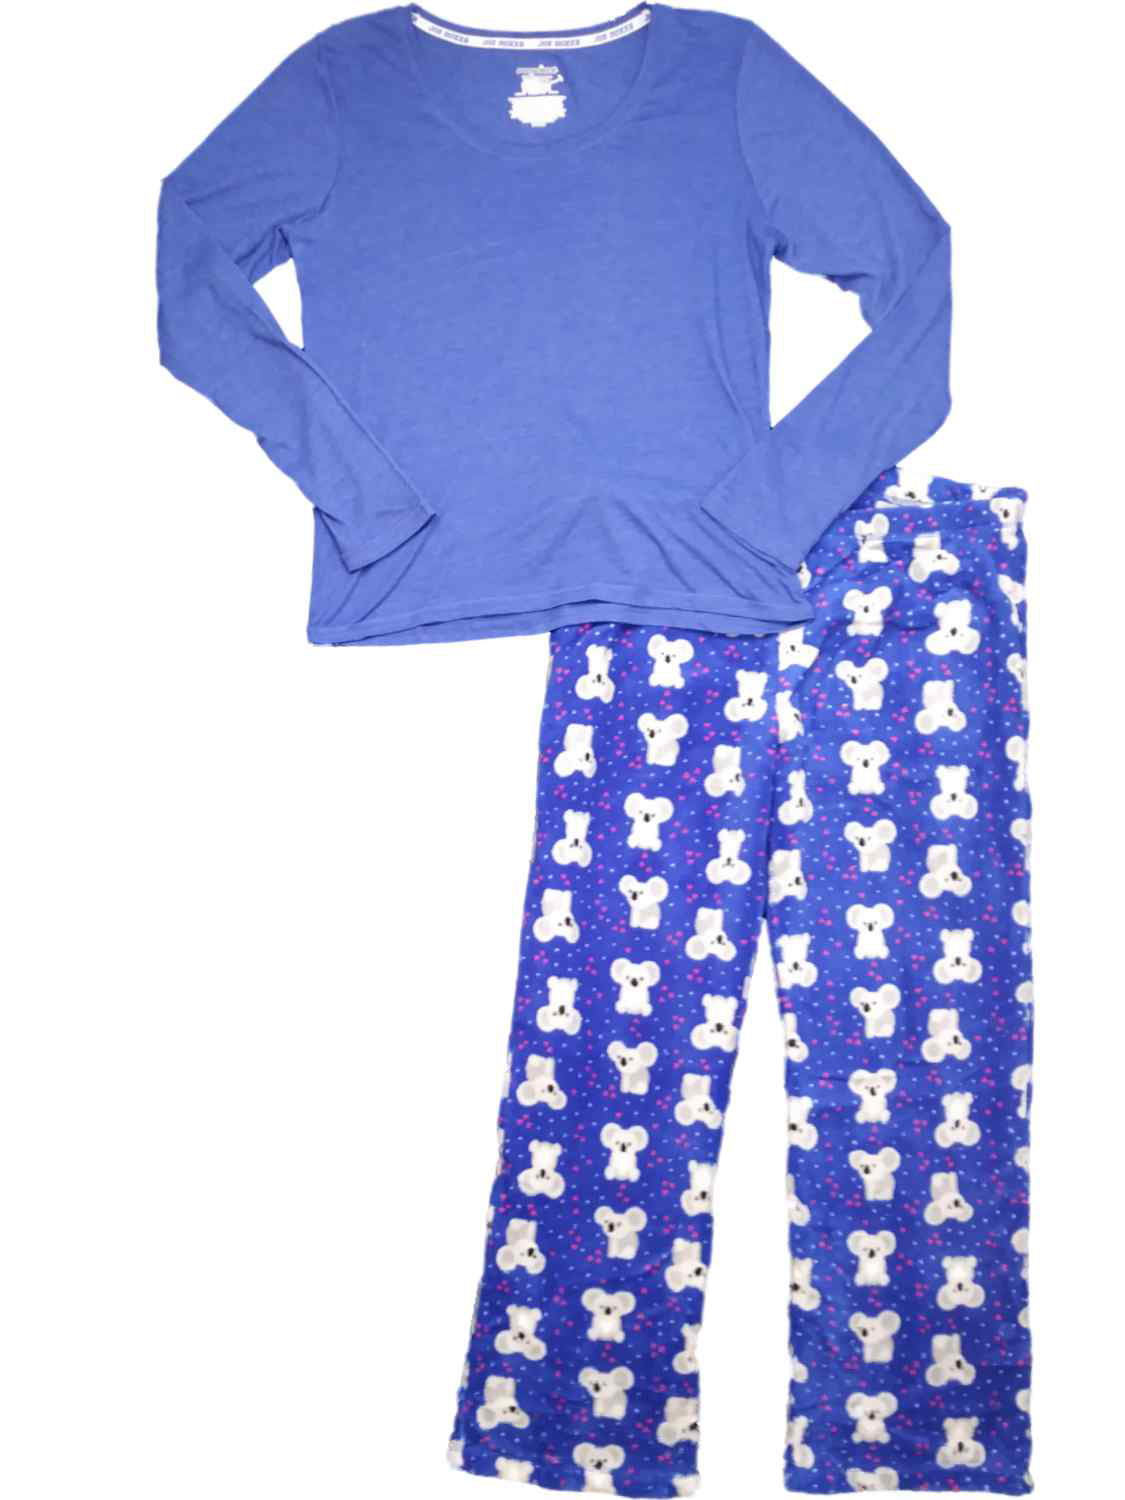 New Women/'s Pajamas Joe Boxer 2 Piece Sets Plush Set  Check Drop Box You Chose